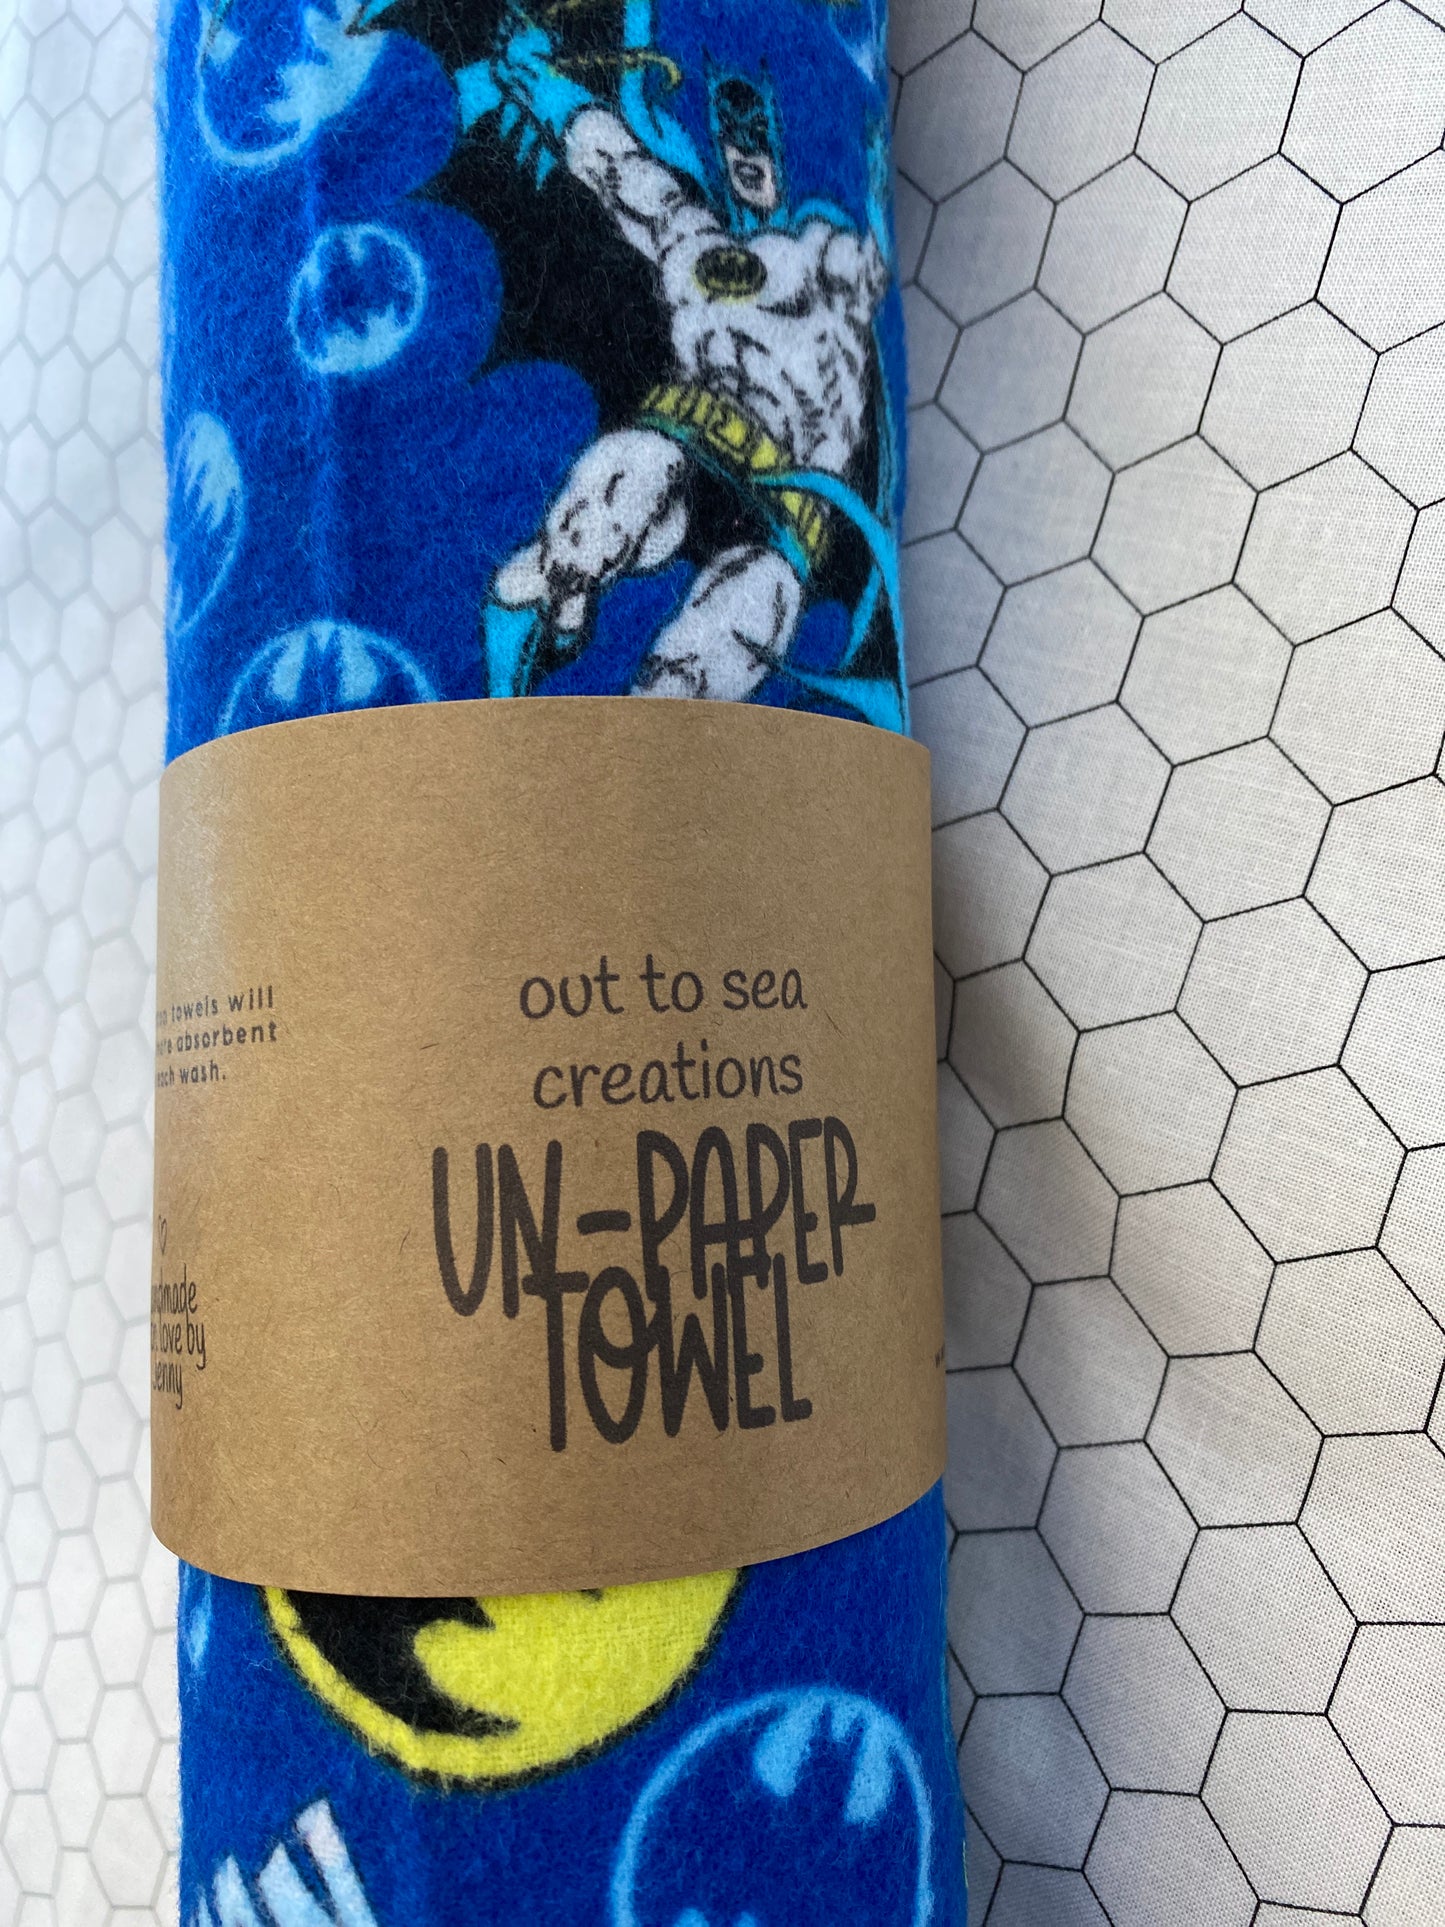 Batman unpaper towel set